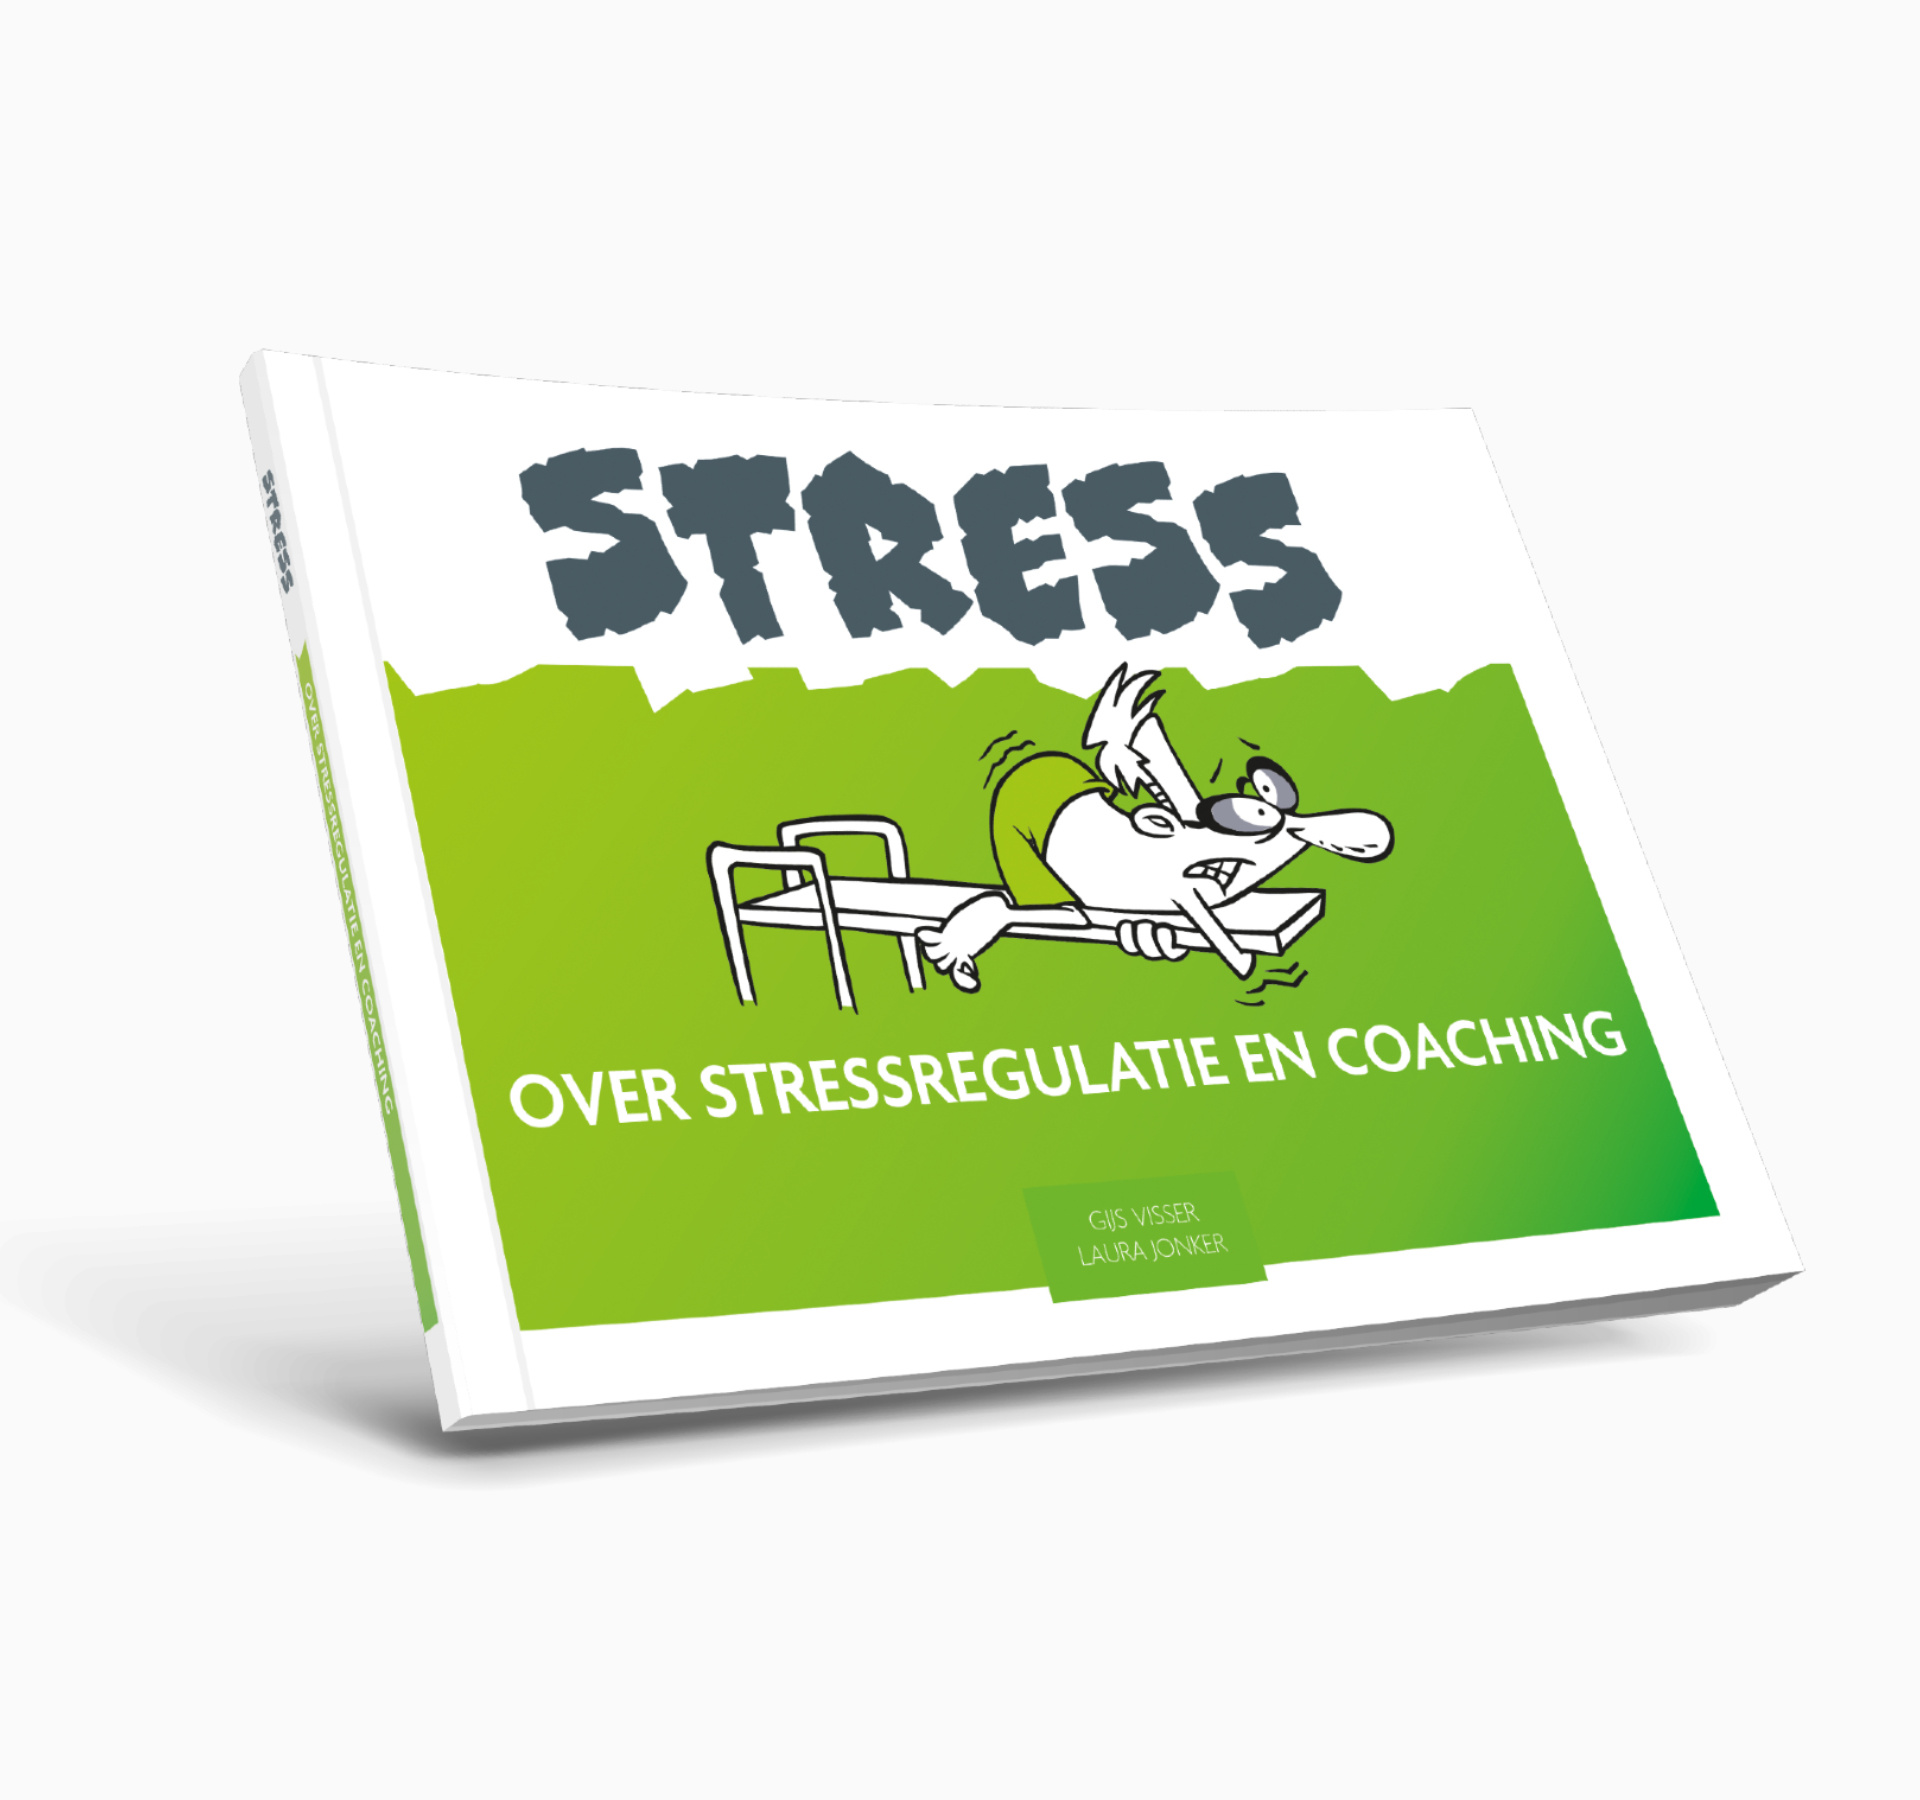 Over stressregulatie en coaching